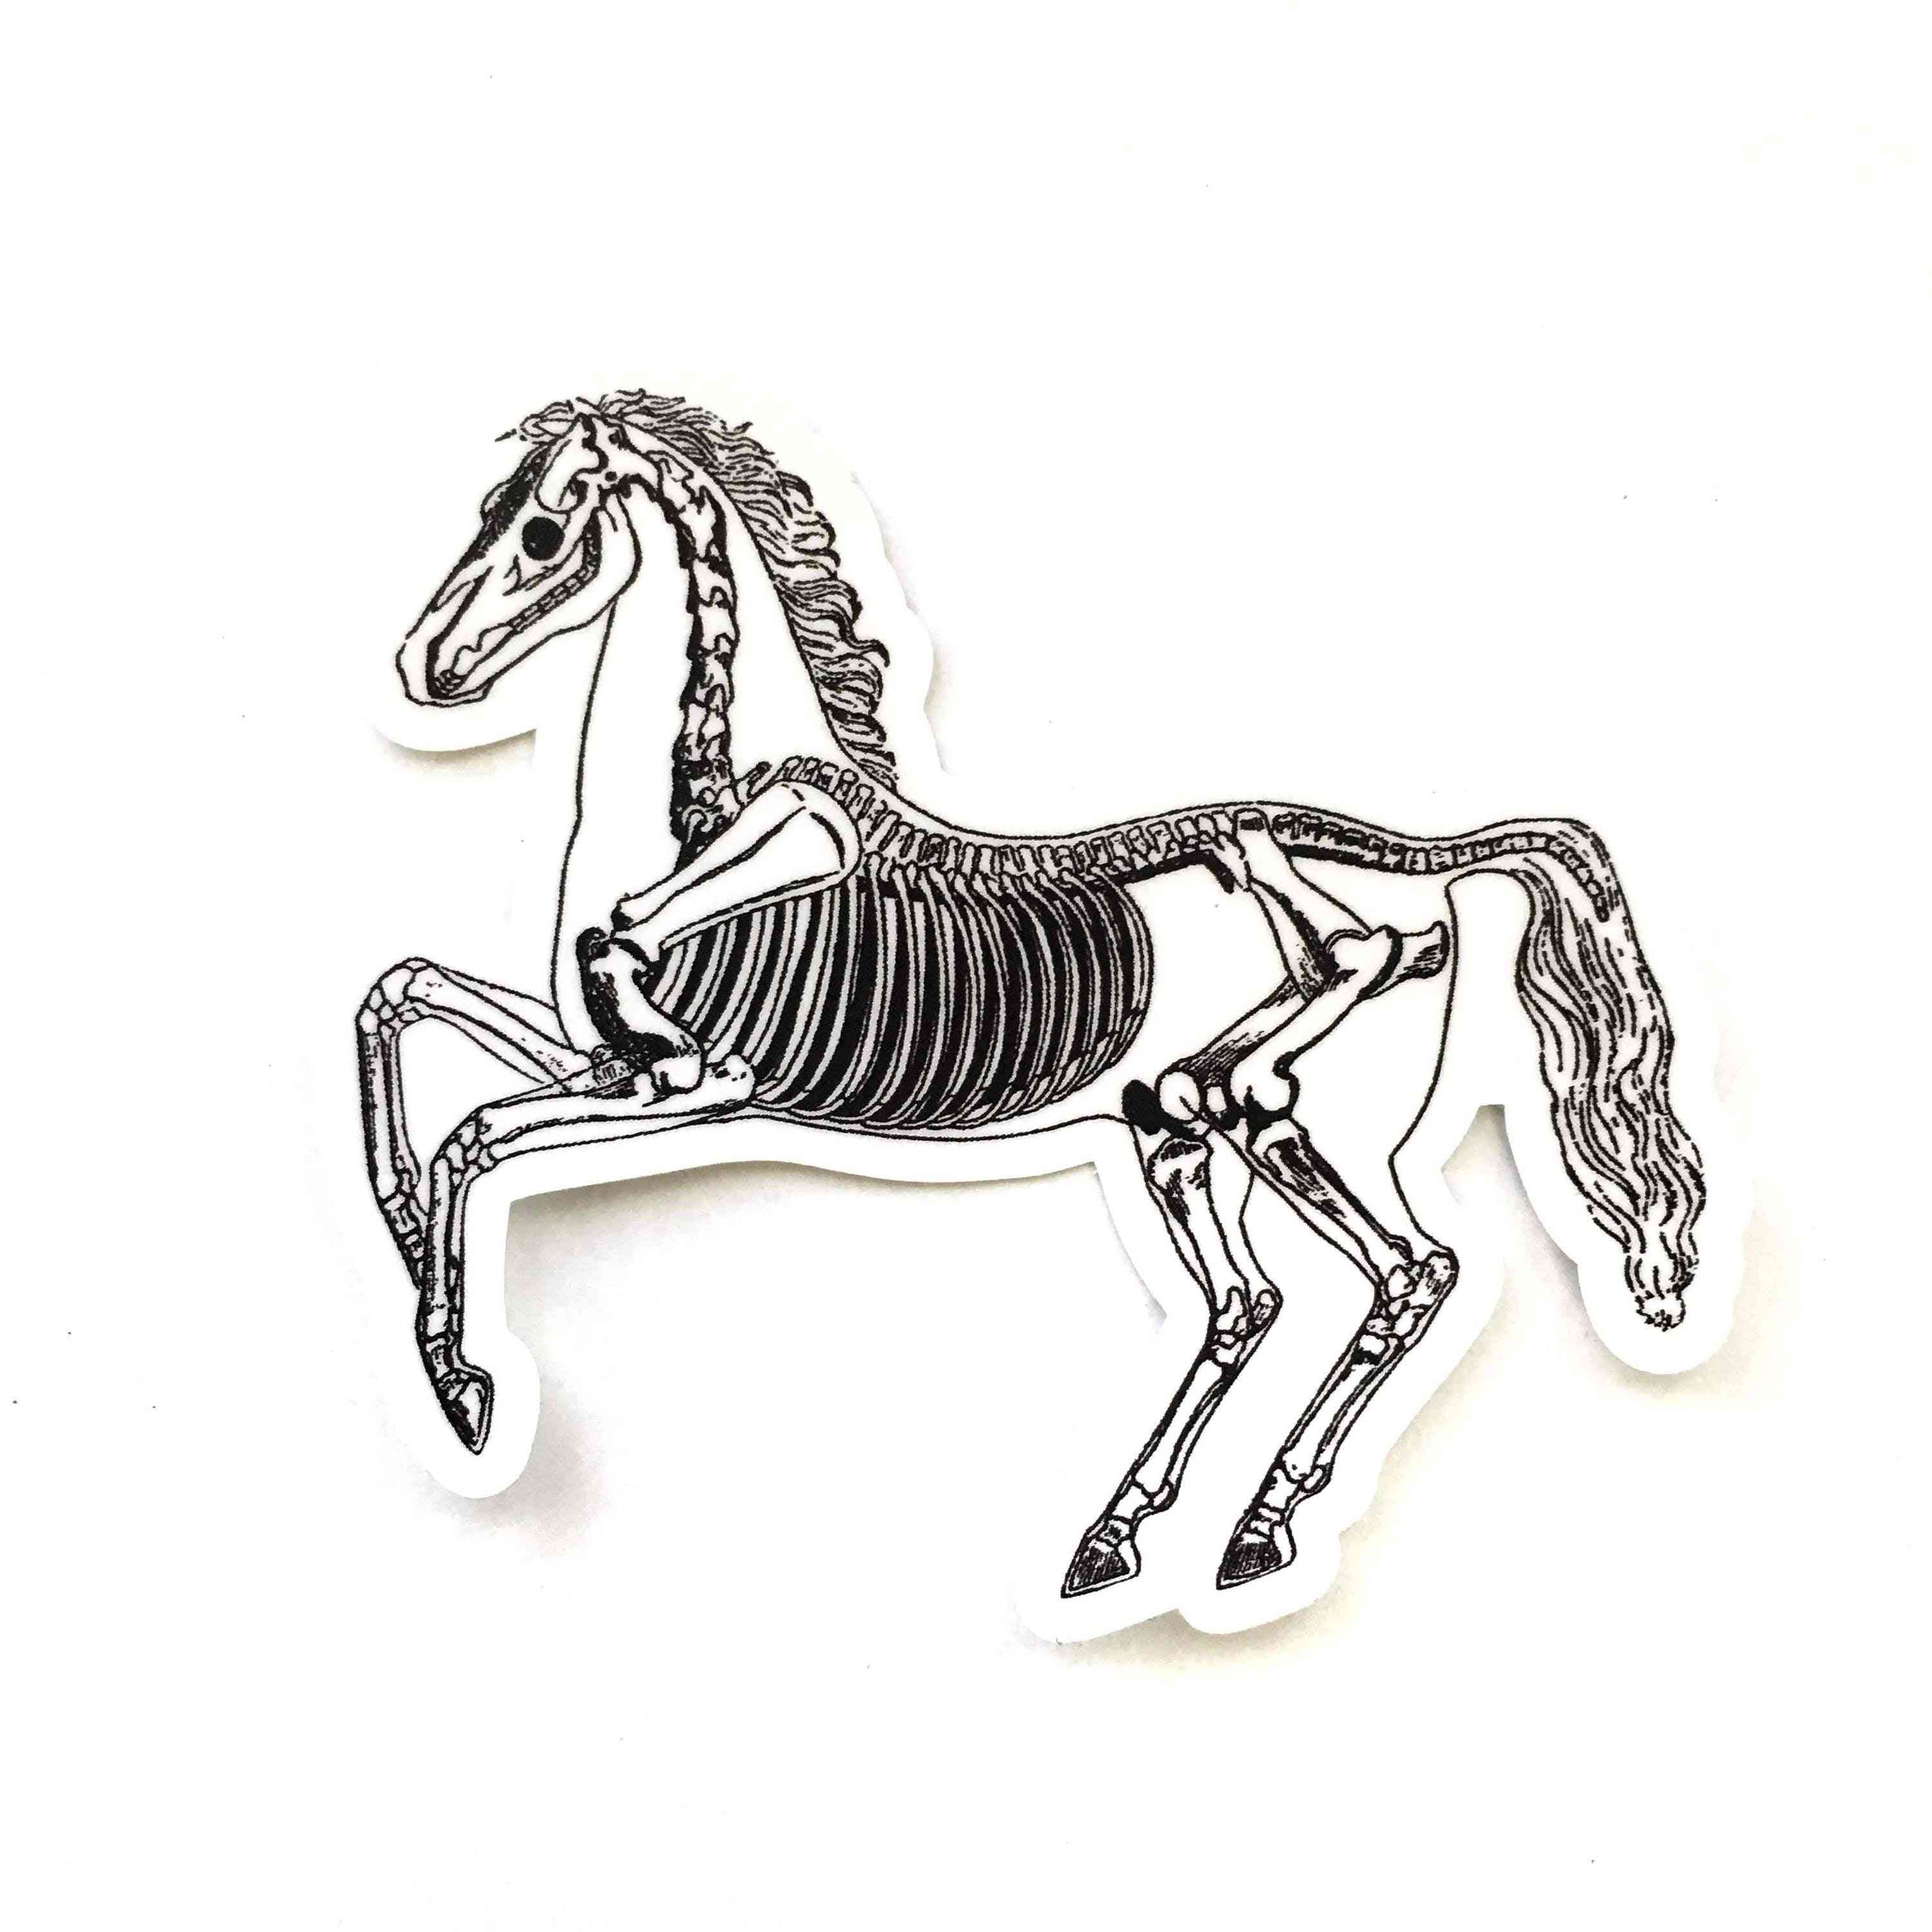 Autocollant vinyle cheval squelette vintage